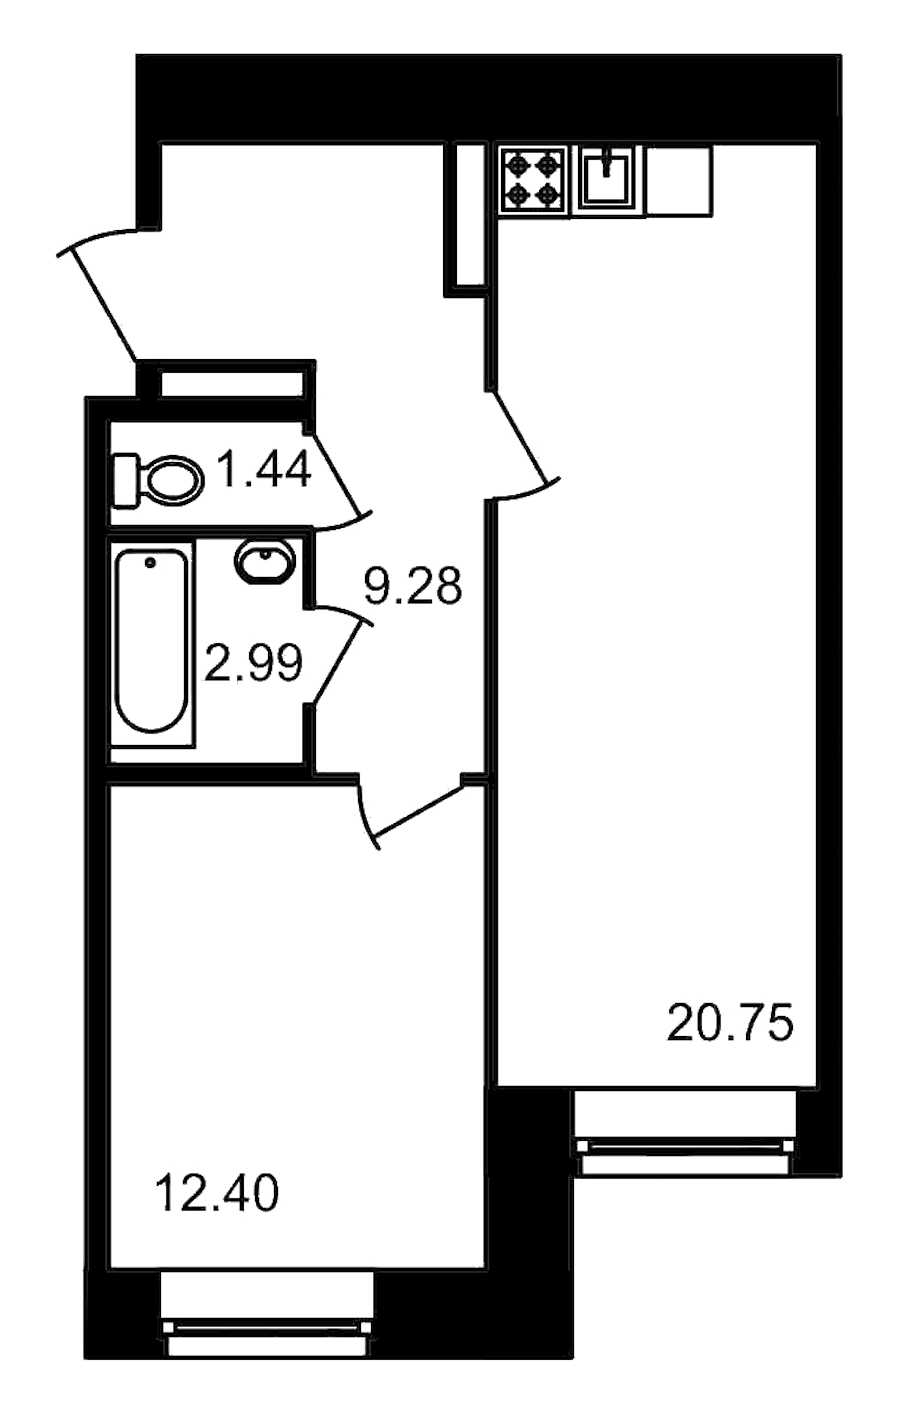 Однокомнатная квартира в ЦДС: площадь 46.86 м2 , этаж: 4 – купить в Санкт-Петербурге